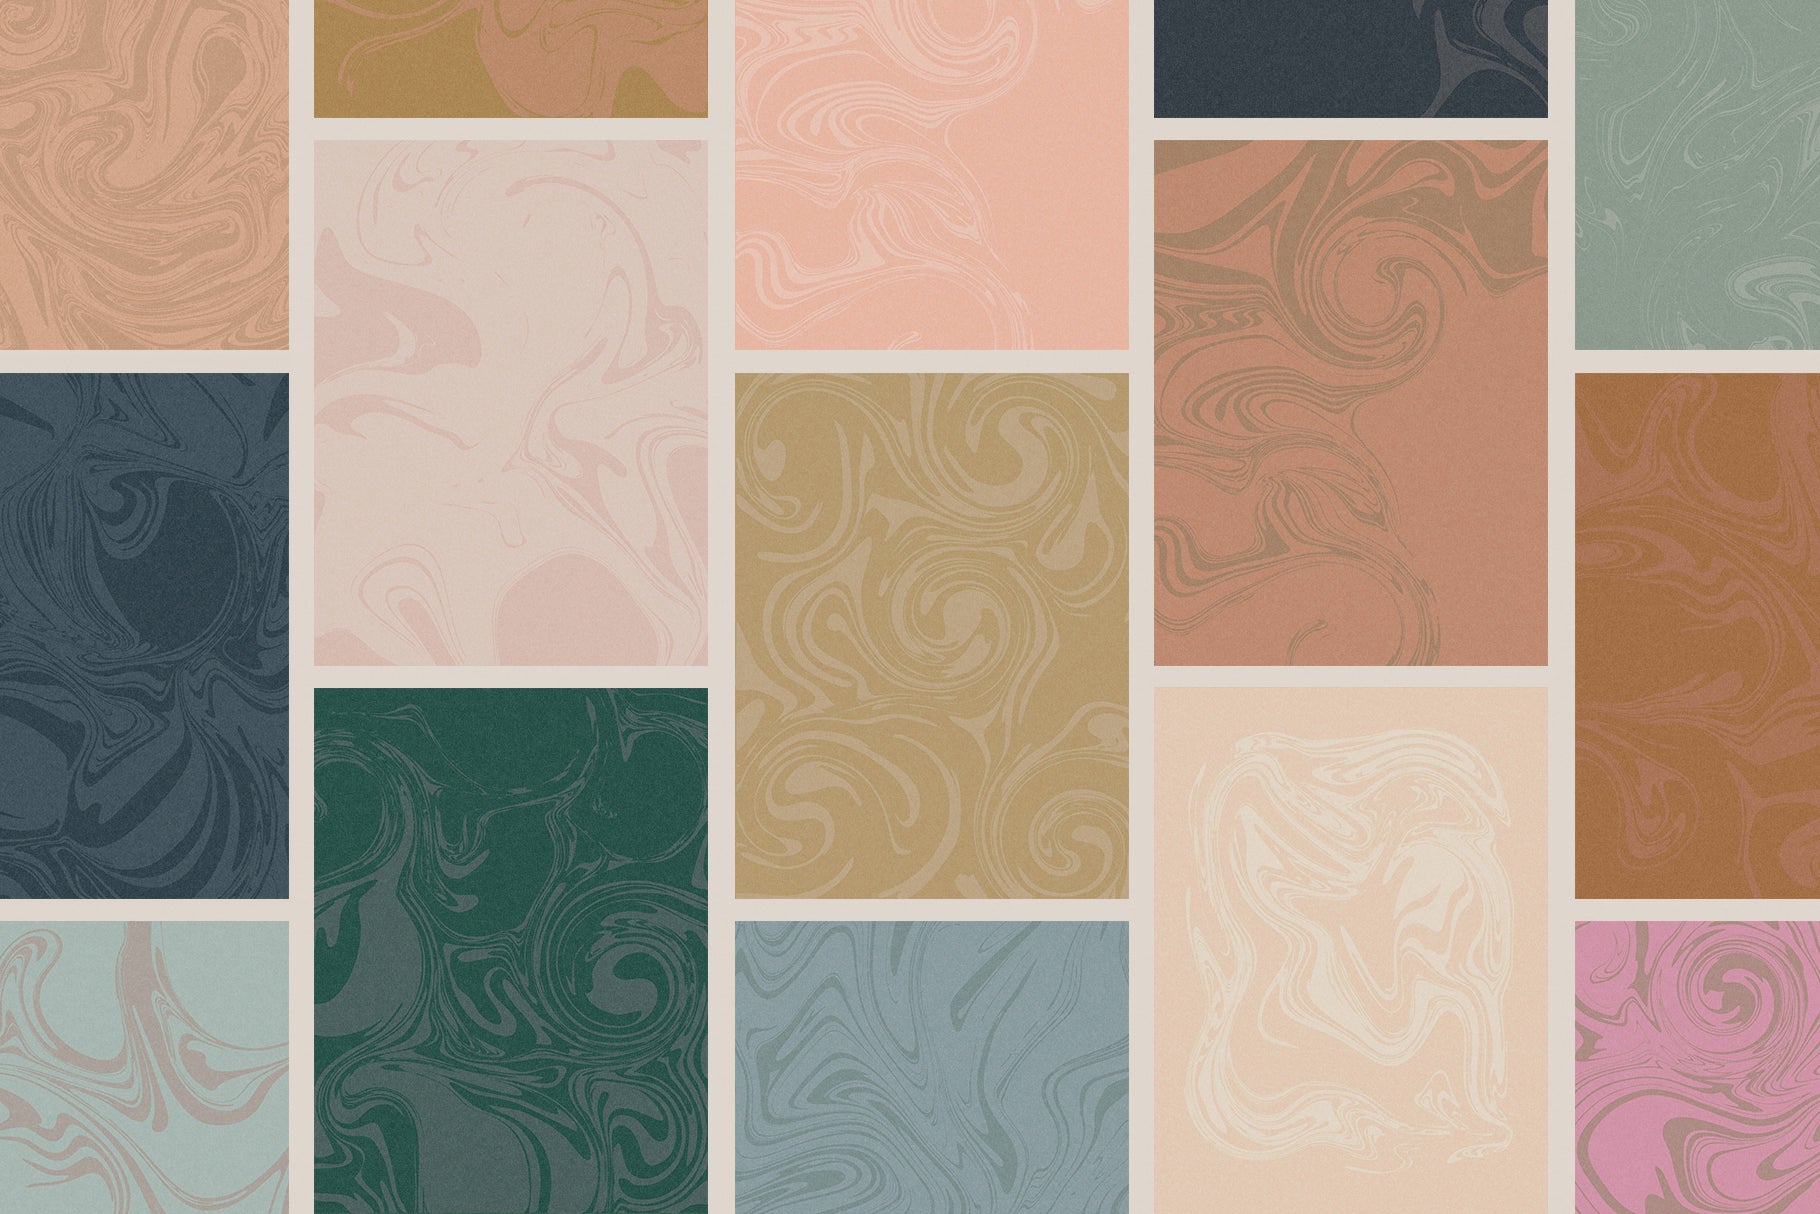 swirl textures vector graphic elements